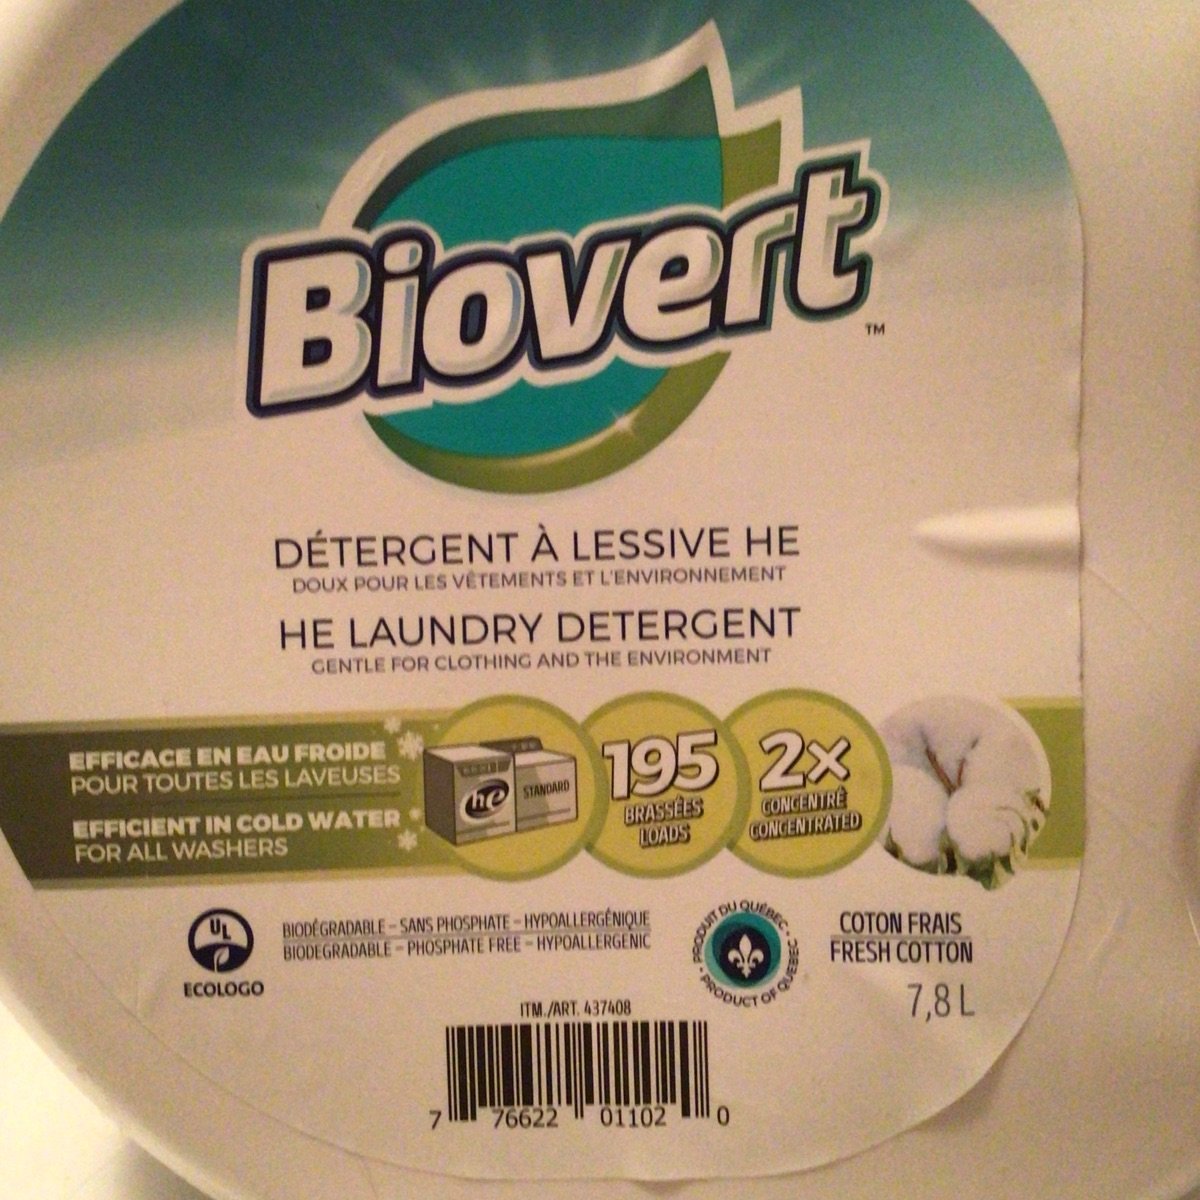 Détergent à lessive HE sans parfum - Biovert